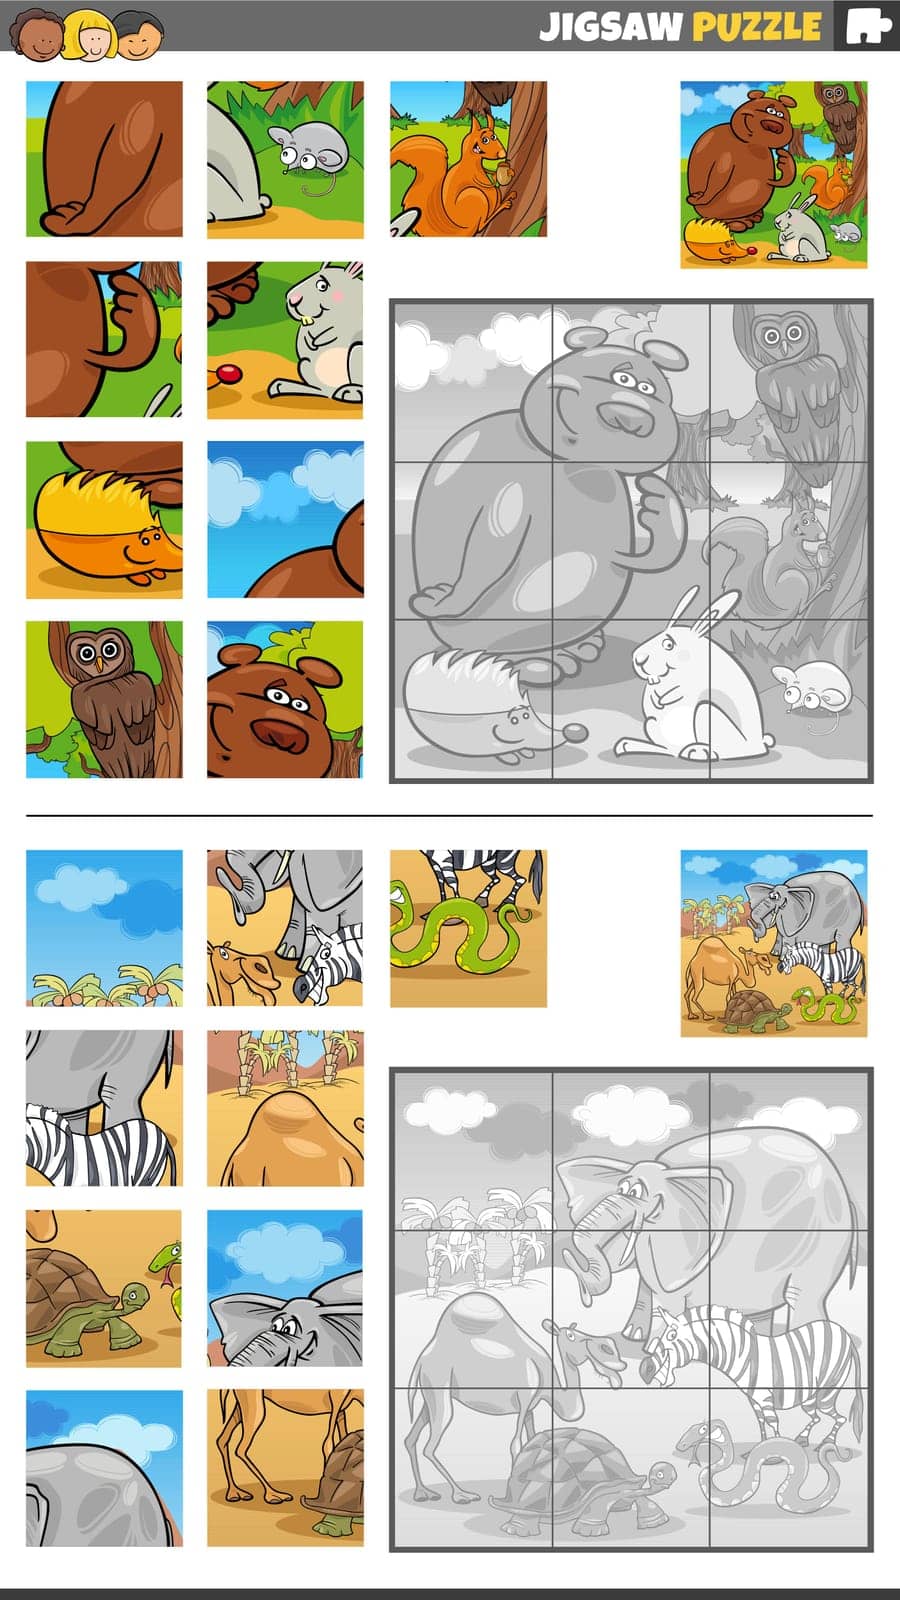 jigsaw puzzle game set with cartoon wild animals by izakowski